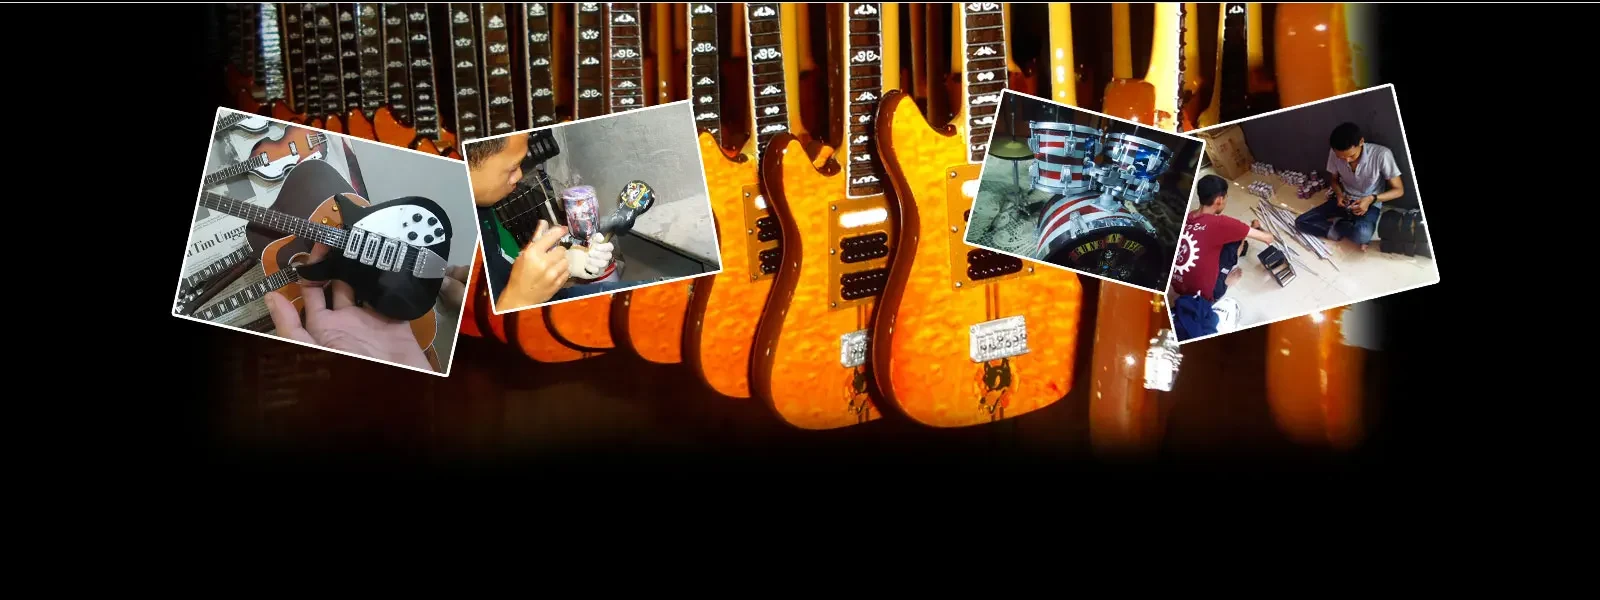 Handmad production miniature guitar replicas